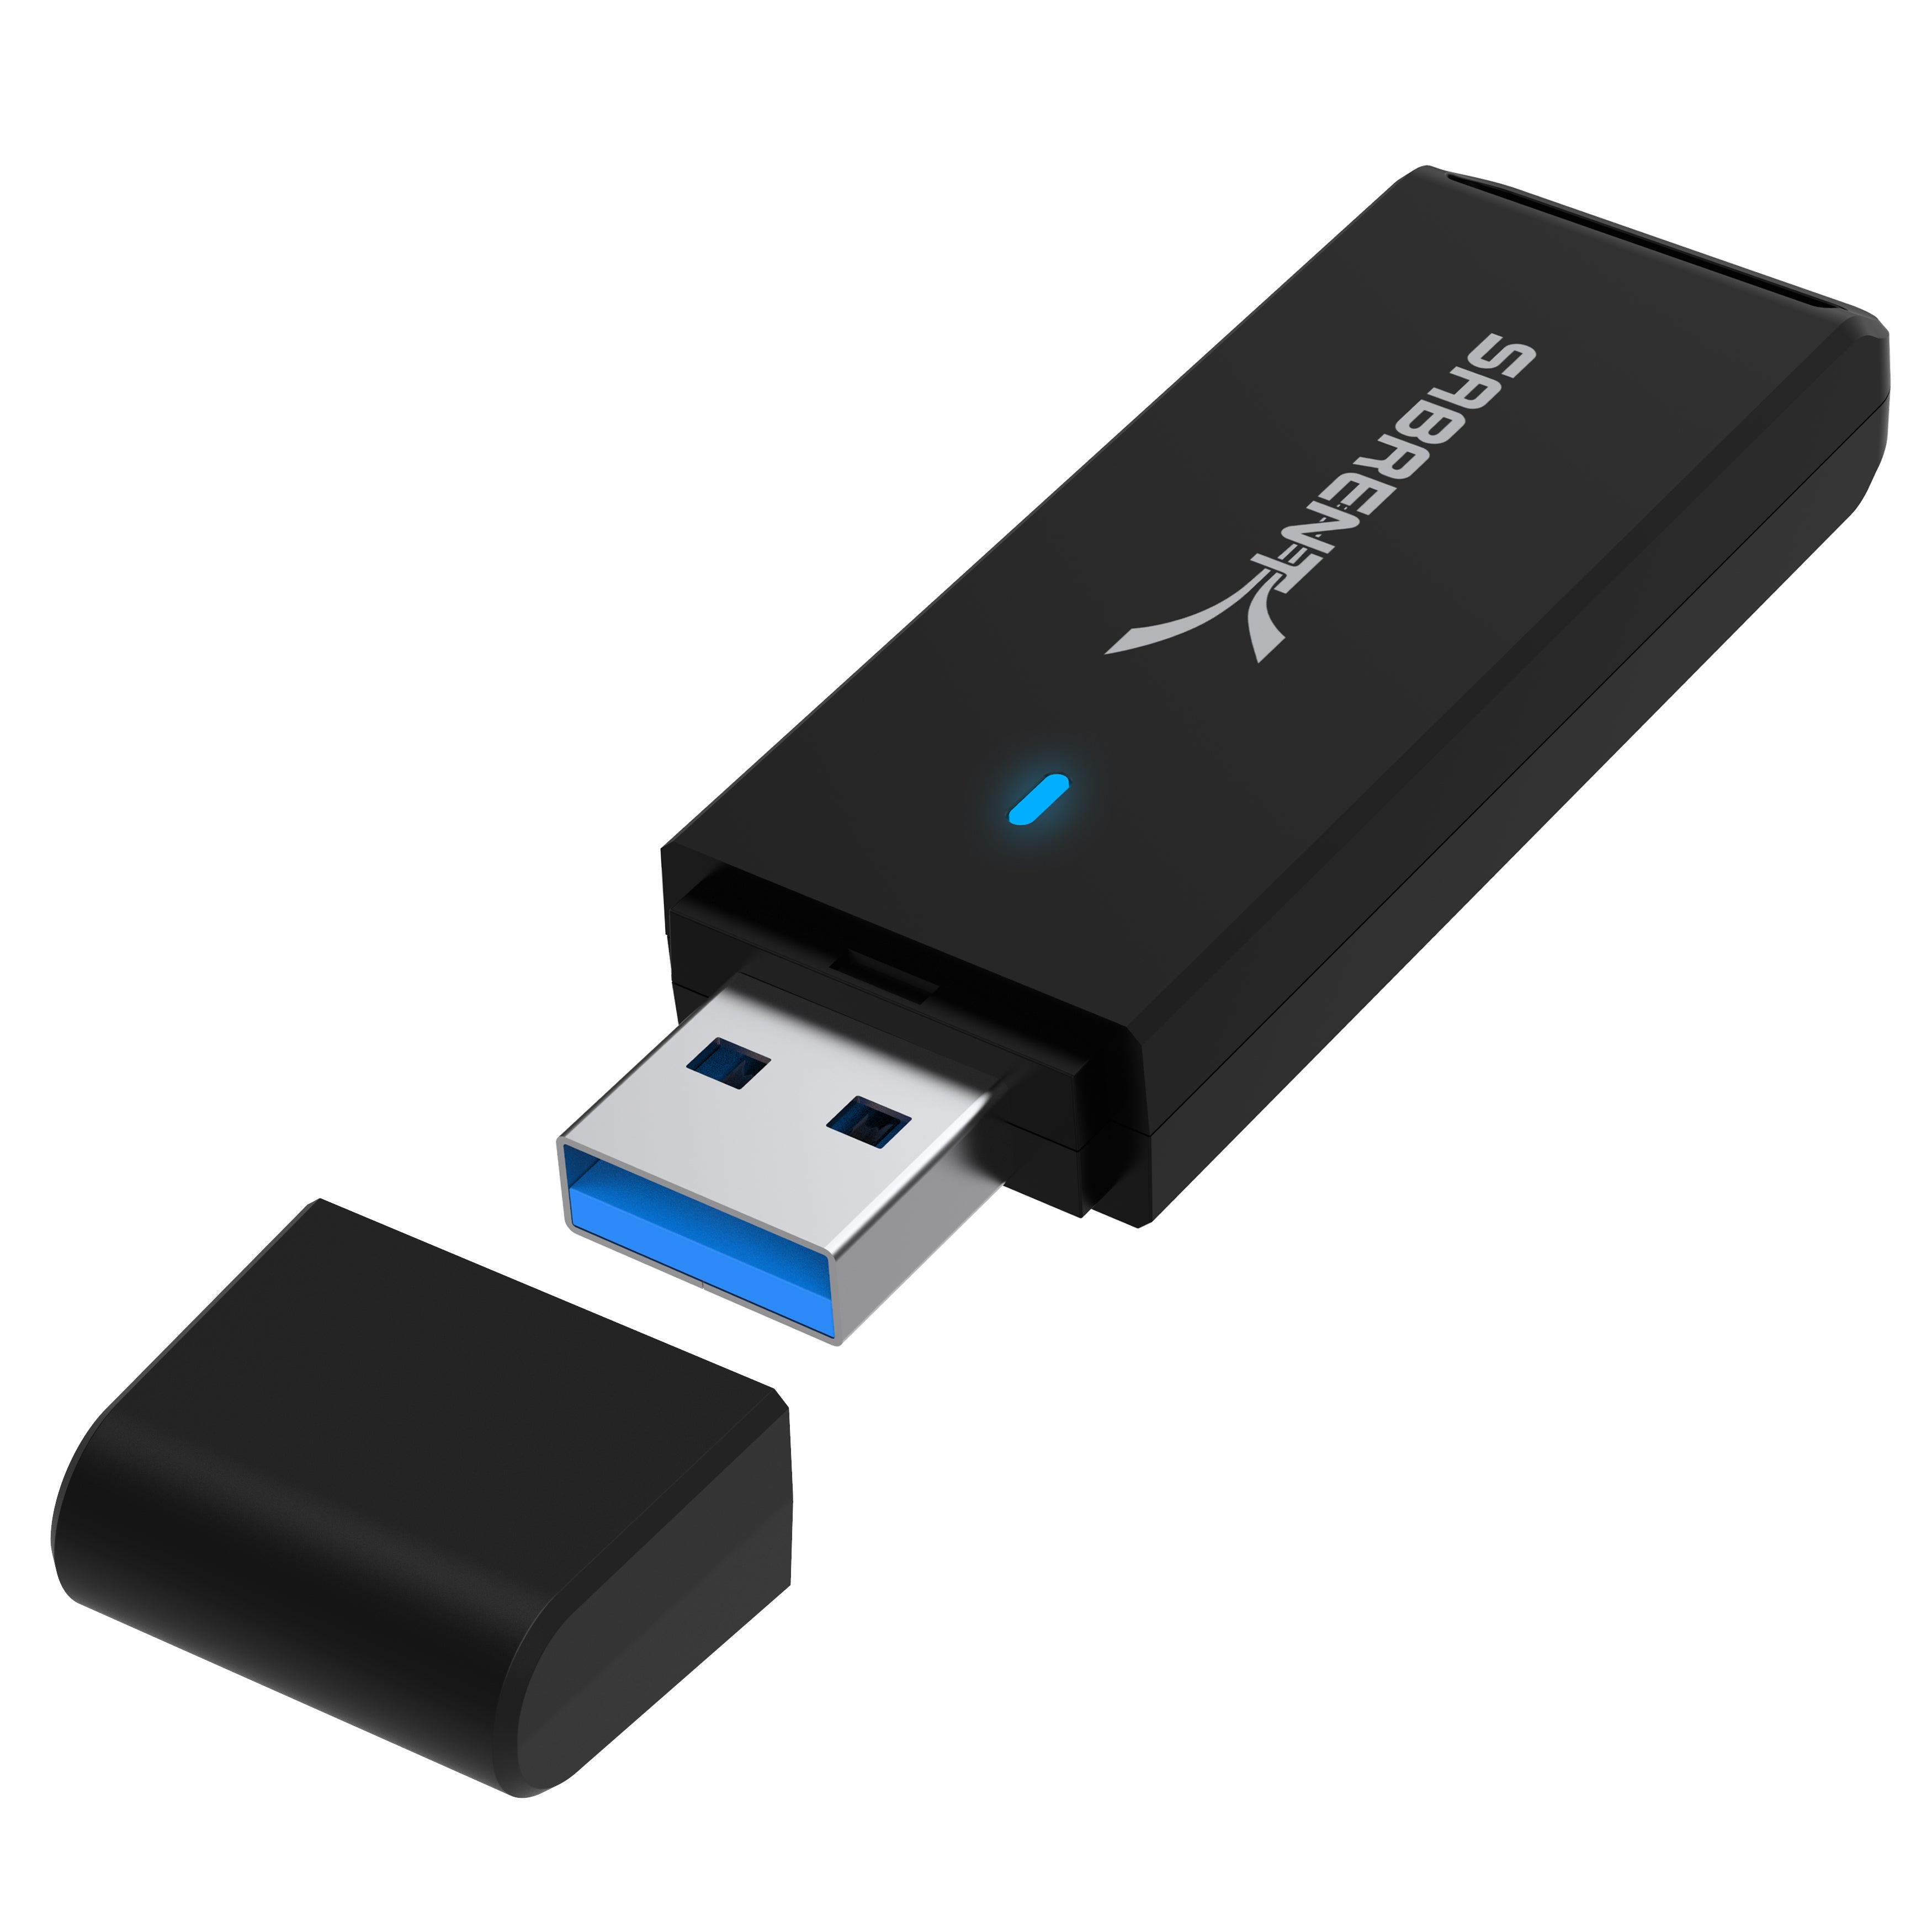 Hito Separar basura USB 3.0 Micro SD and SD Card Reader - Sabrent